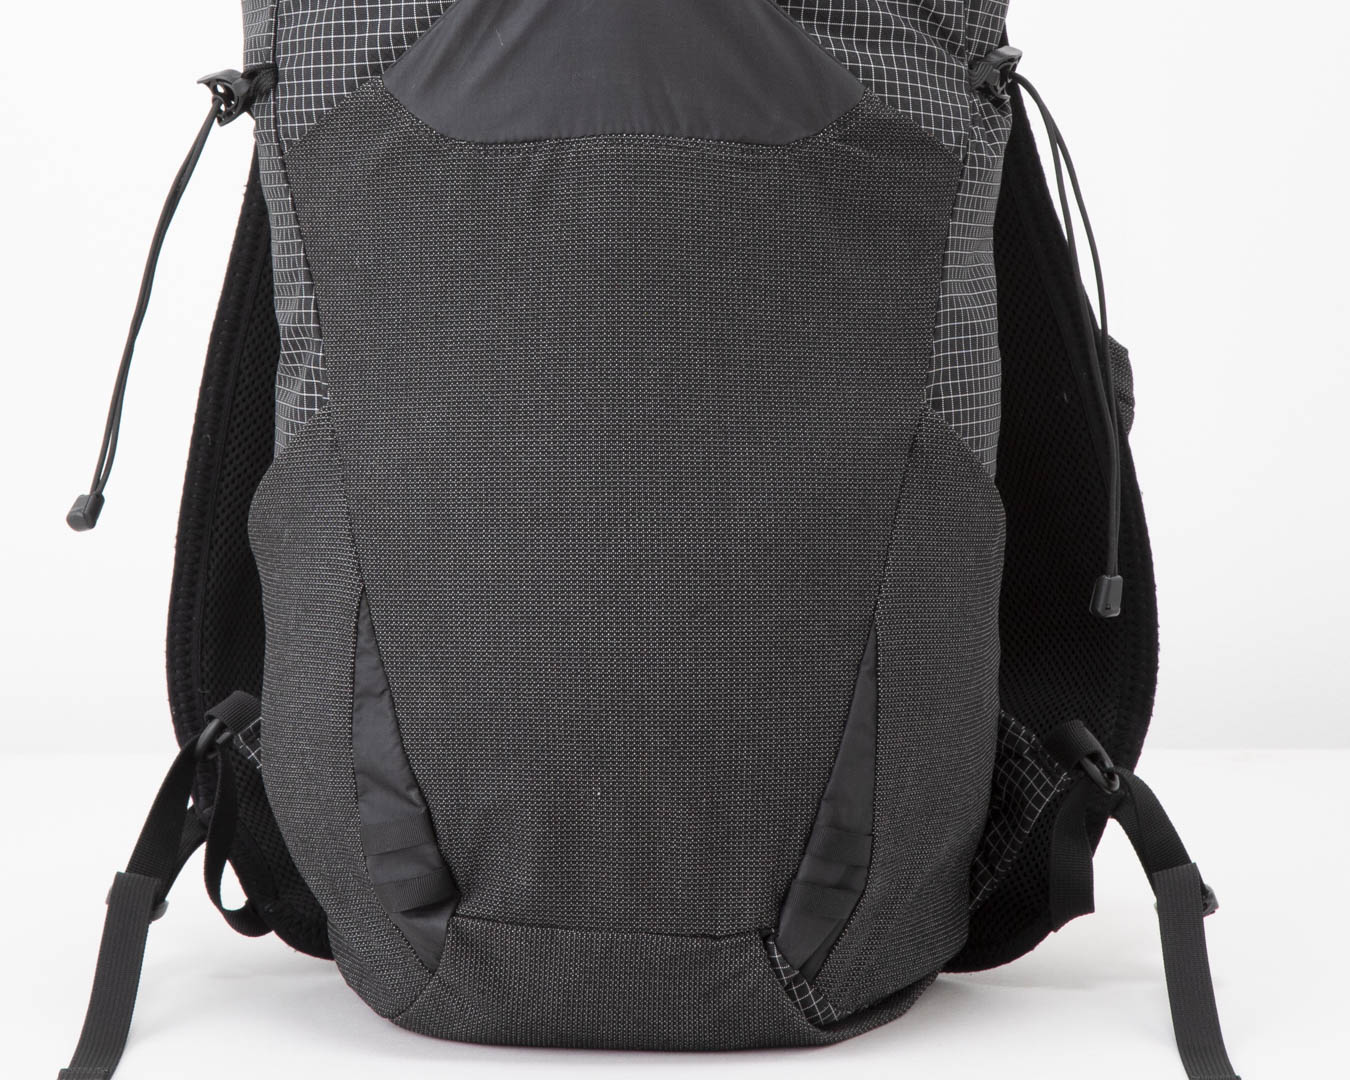 THE BACKPACK TEST 202310 Modern Ultralight backpacks – Part 1 | 山